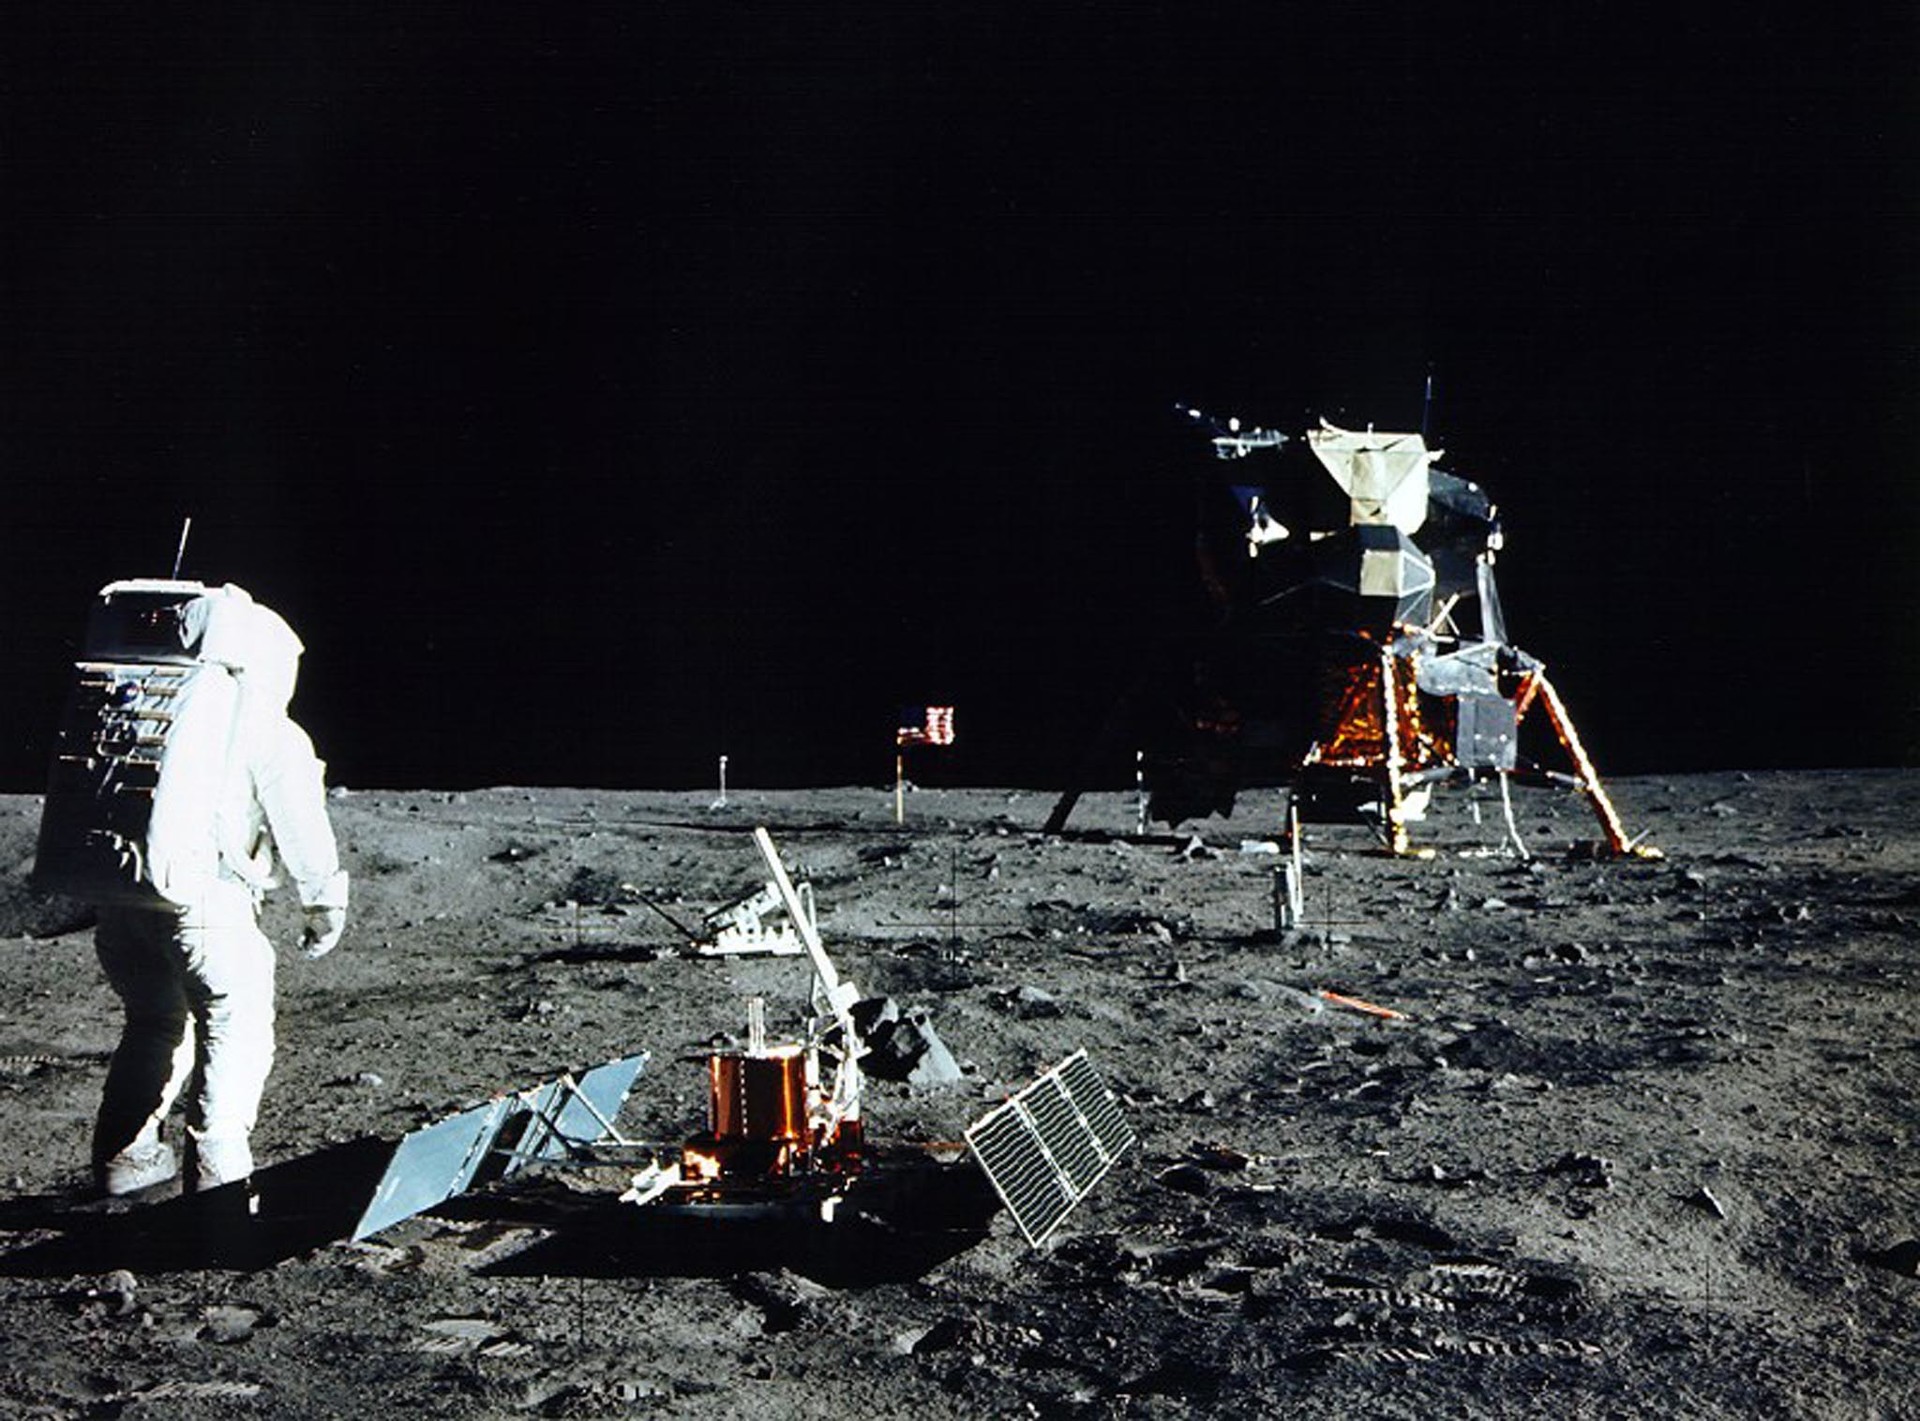 Аполлон 11 Нил Армстронг